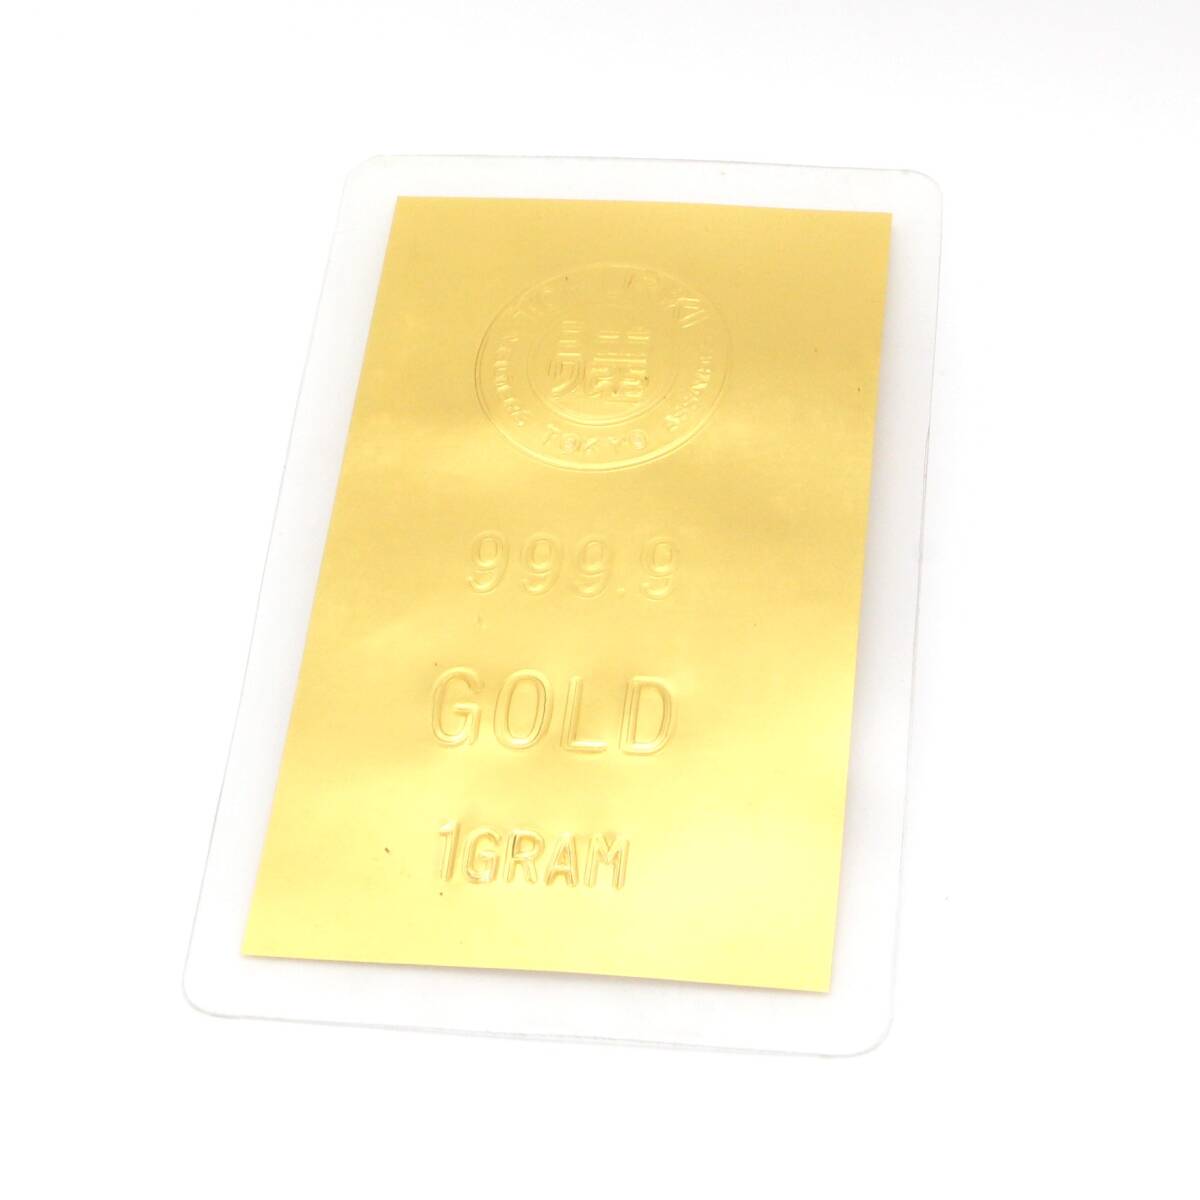 【純金カード】 徳力 TOKURIKI 1g 999.9 ラミネート GOLD ゴールド 24金 K24 総重量2.6g の画像1